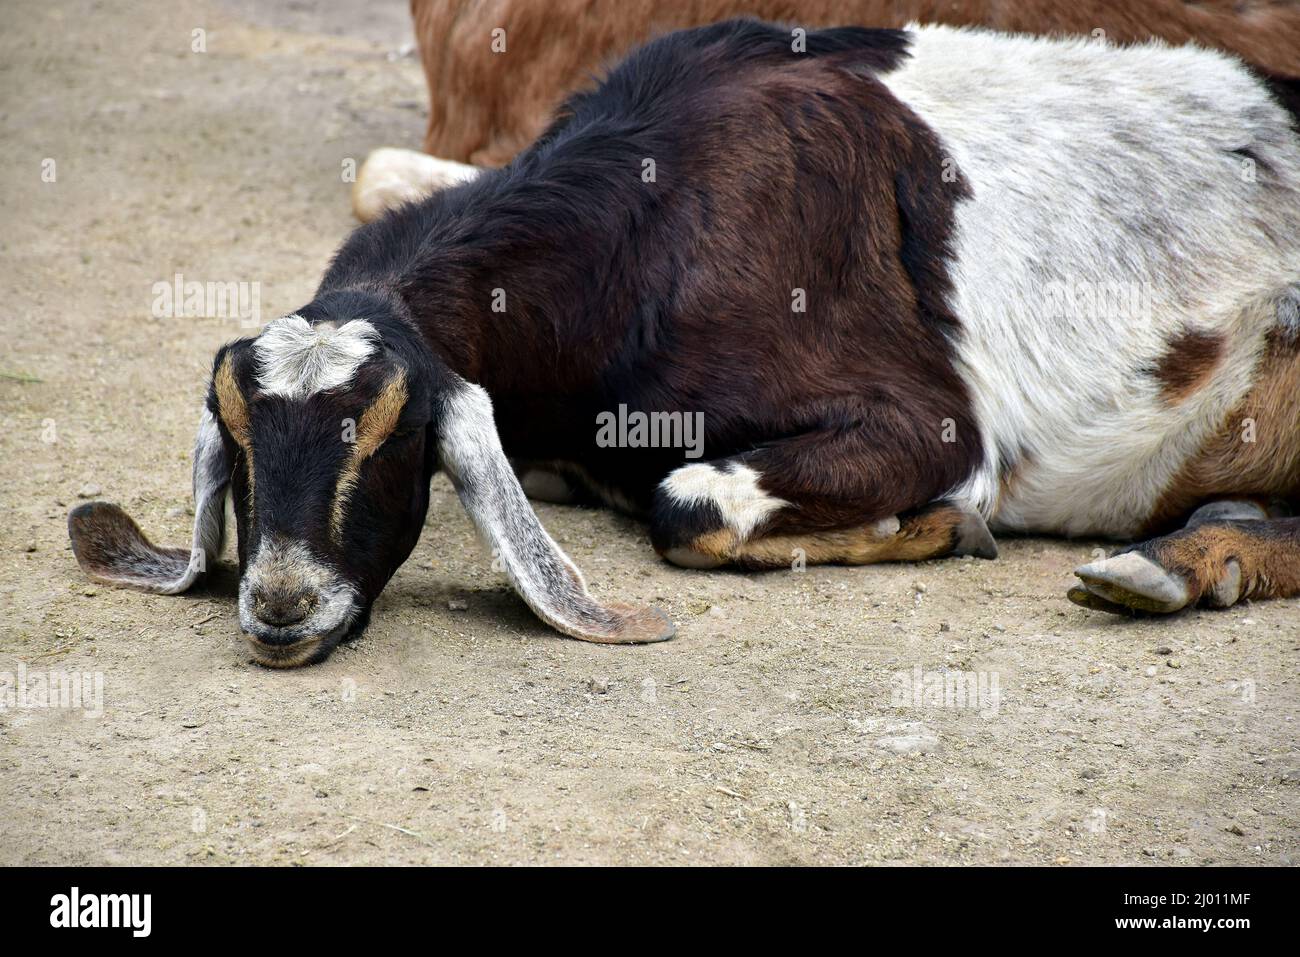 Schwarze, braune und weiße Ziege mit langen Ohren, die mit ihrem Kinn auf dem Boden liegen Stockfoto